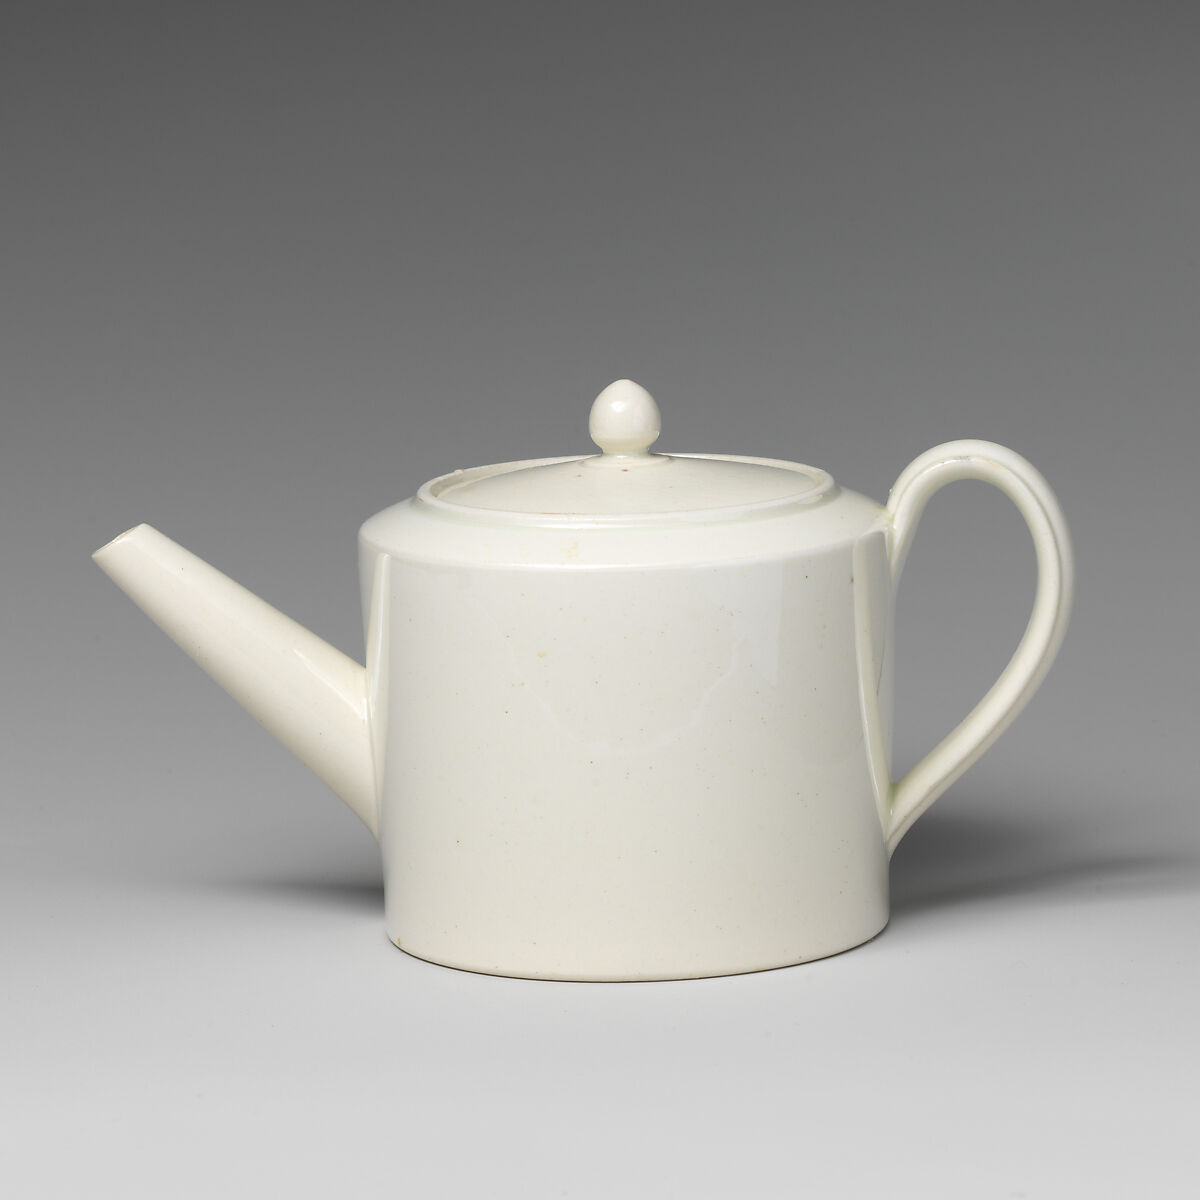 Miniature teapot (part of a set), Soft-paste porcelain, British 